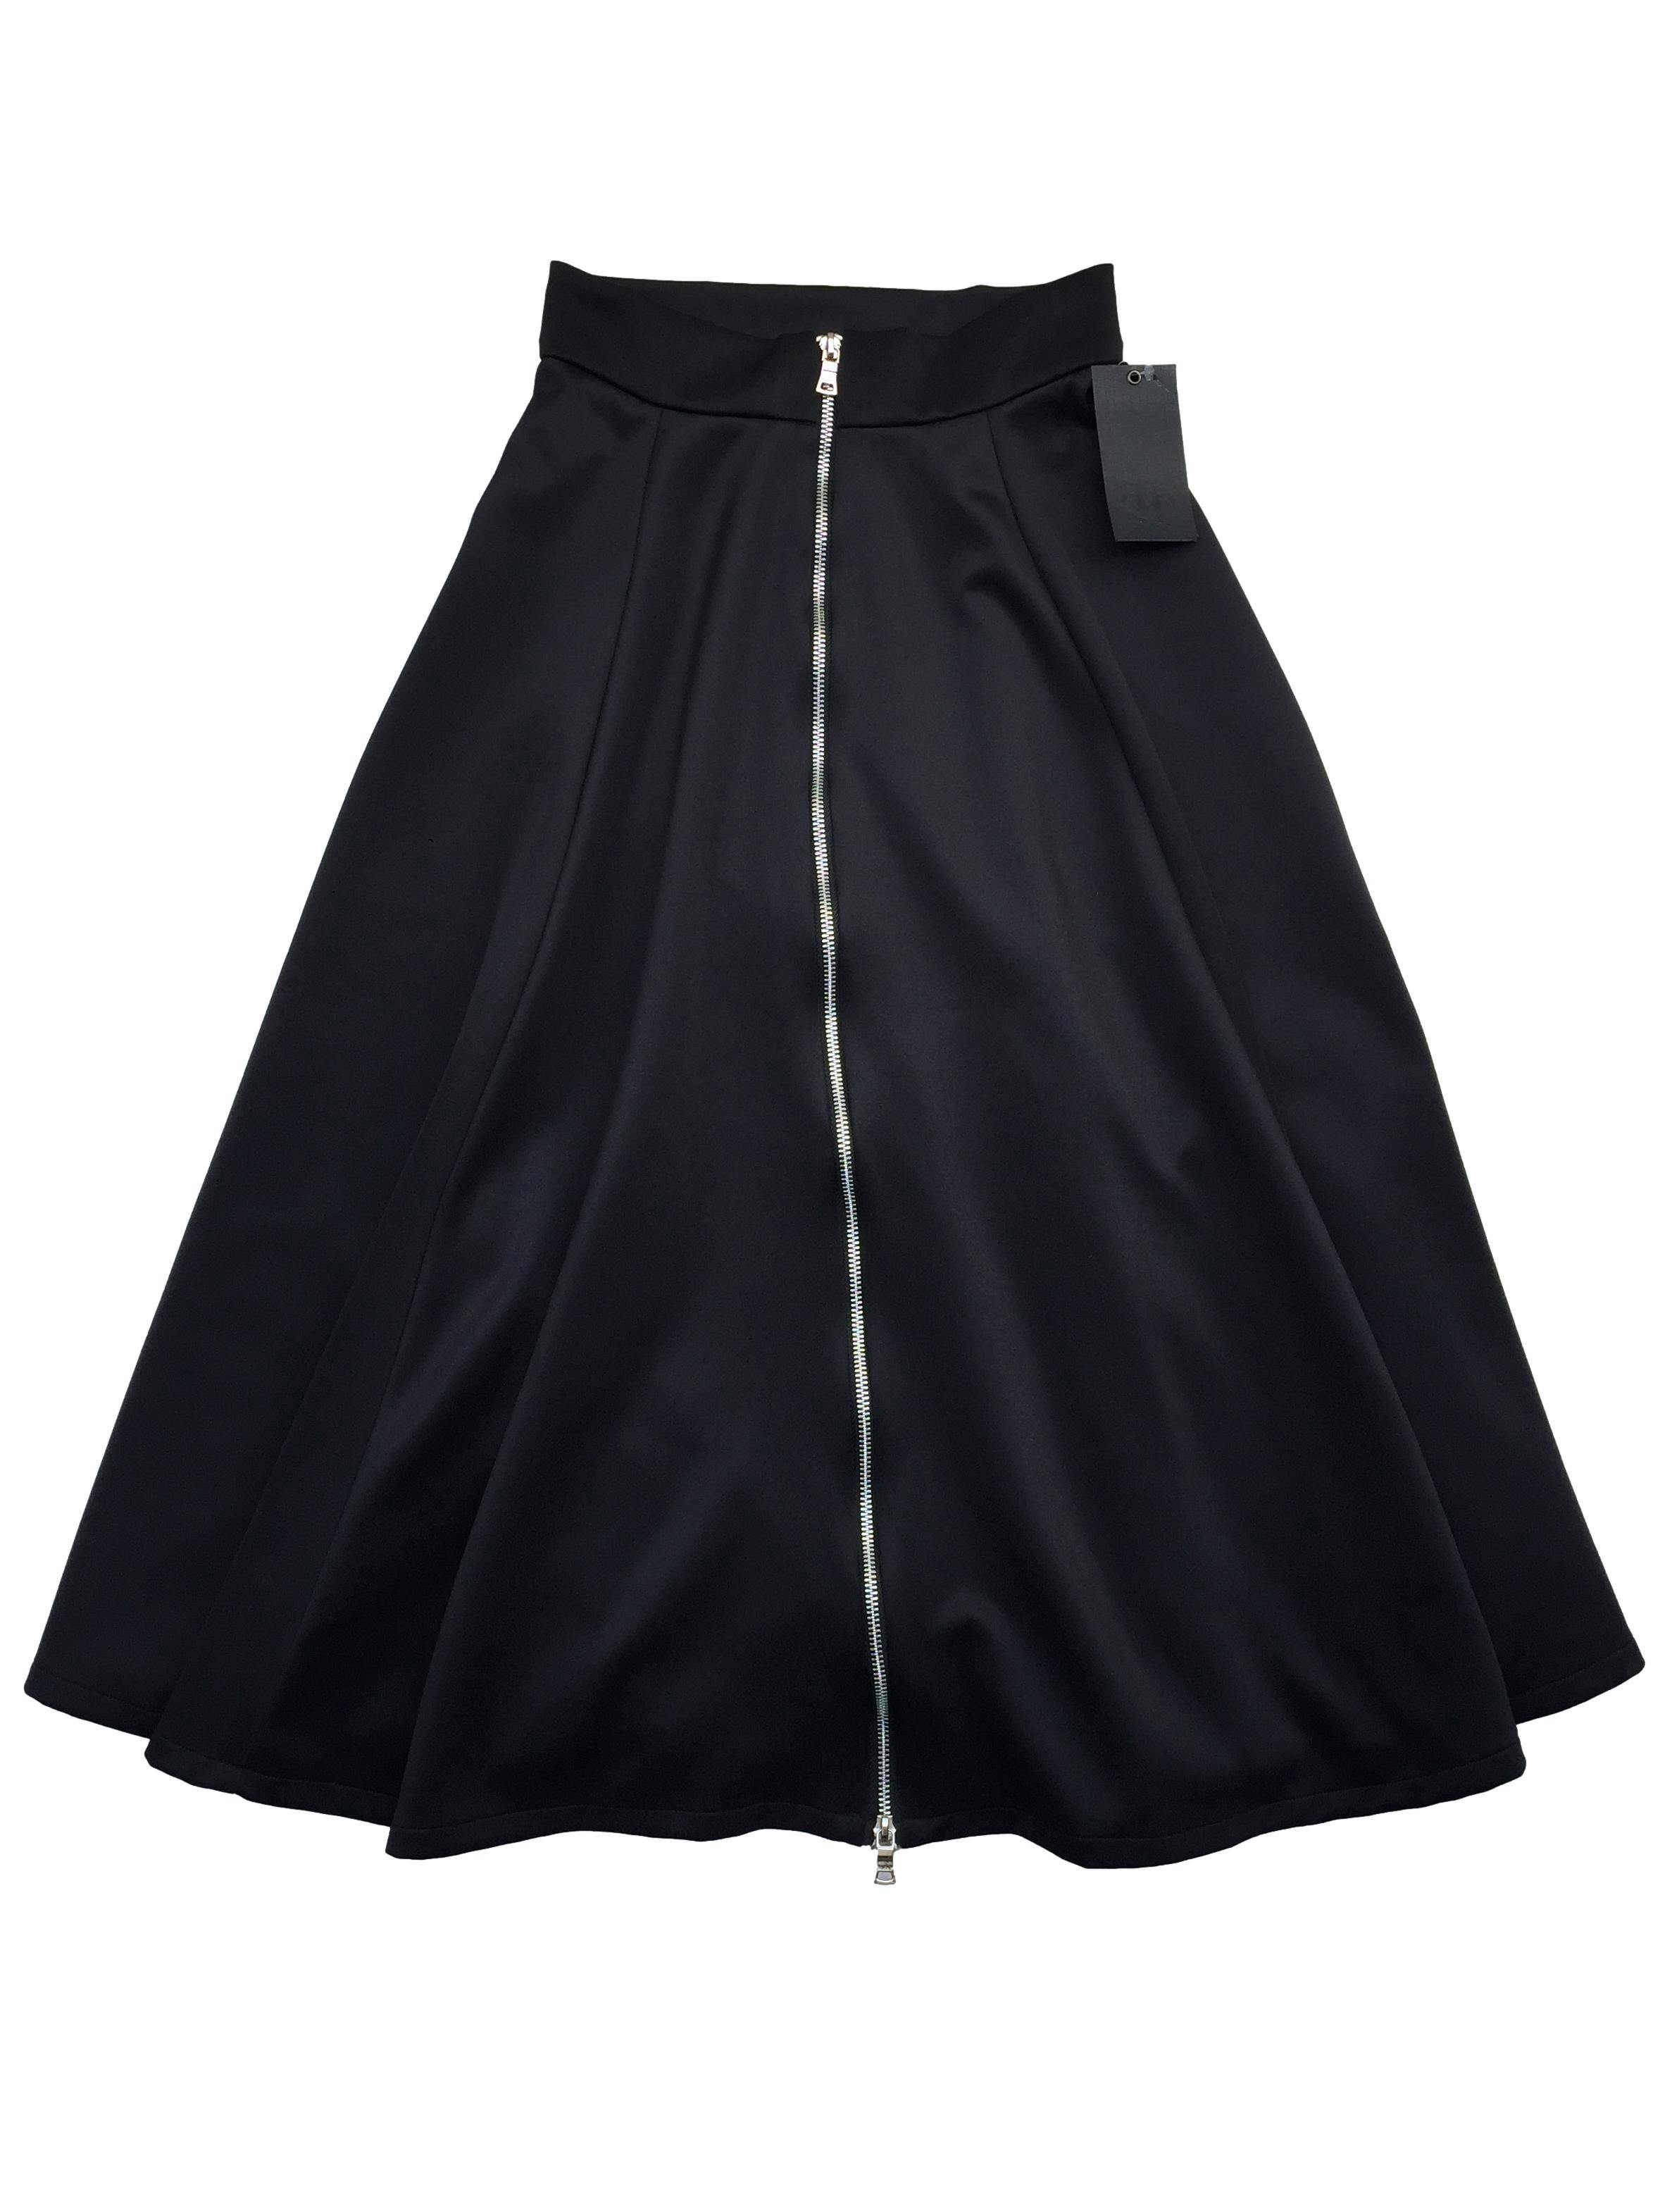 Falda H&M negra plisada con cierre y botón lateral. Cintura 65cm Largo 92cm. Nuevo con etiqueta